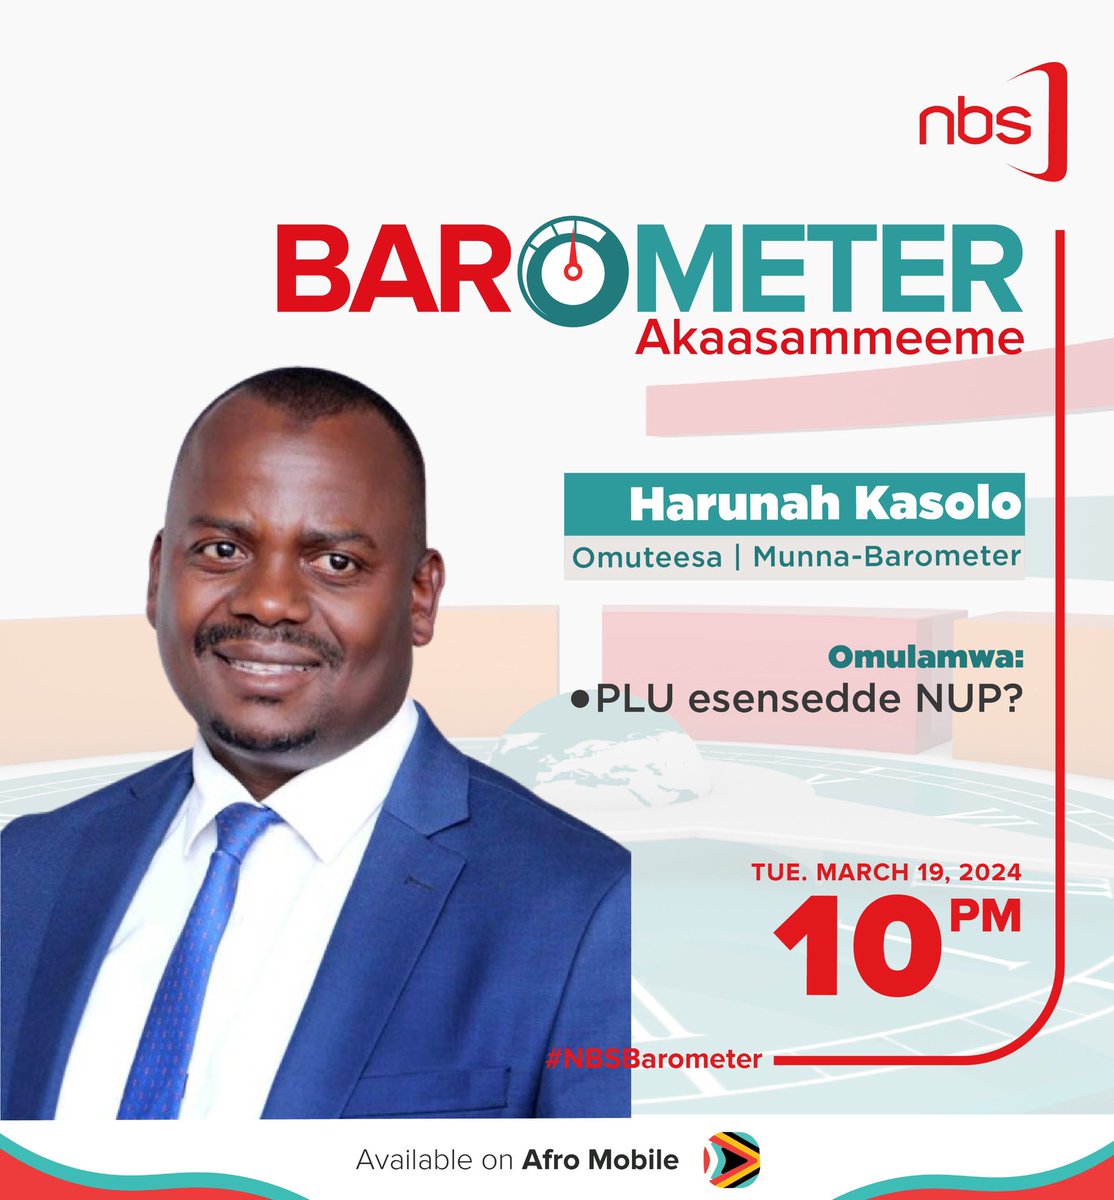 Don’t miss #NBSBarometer tonight!